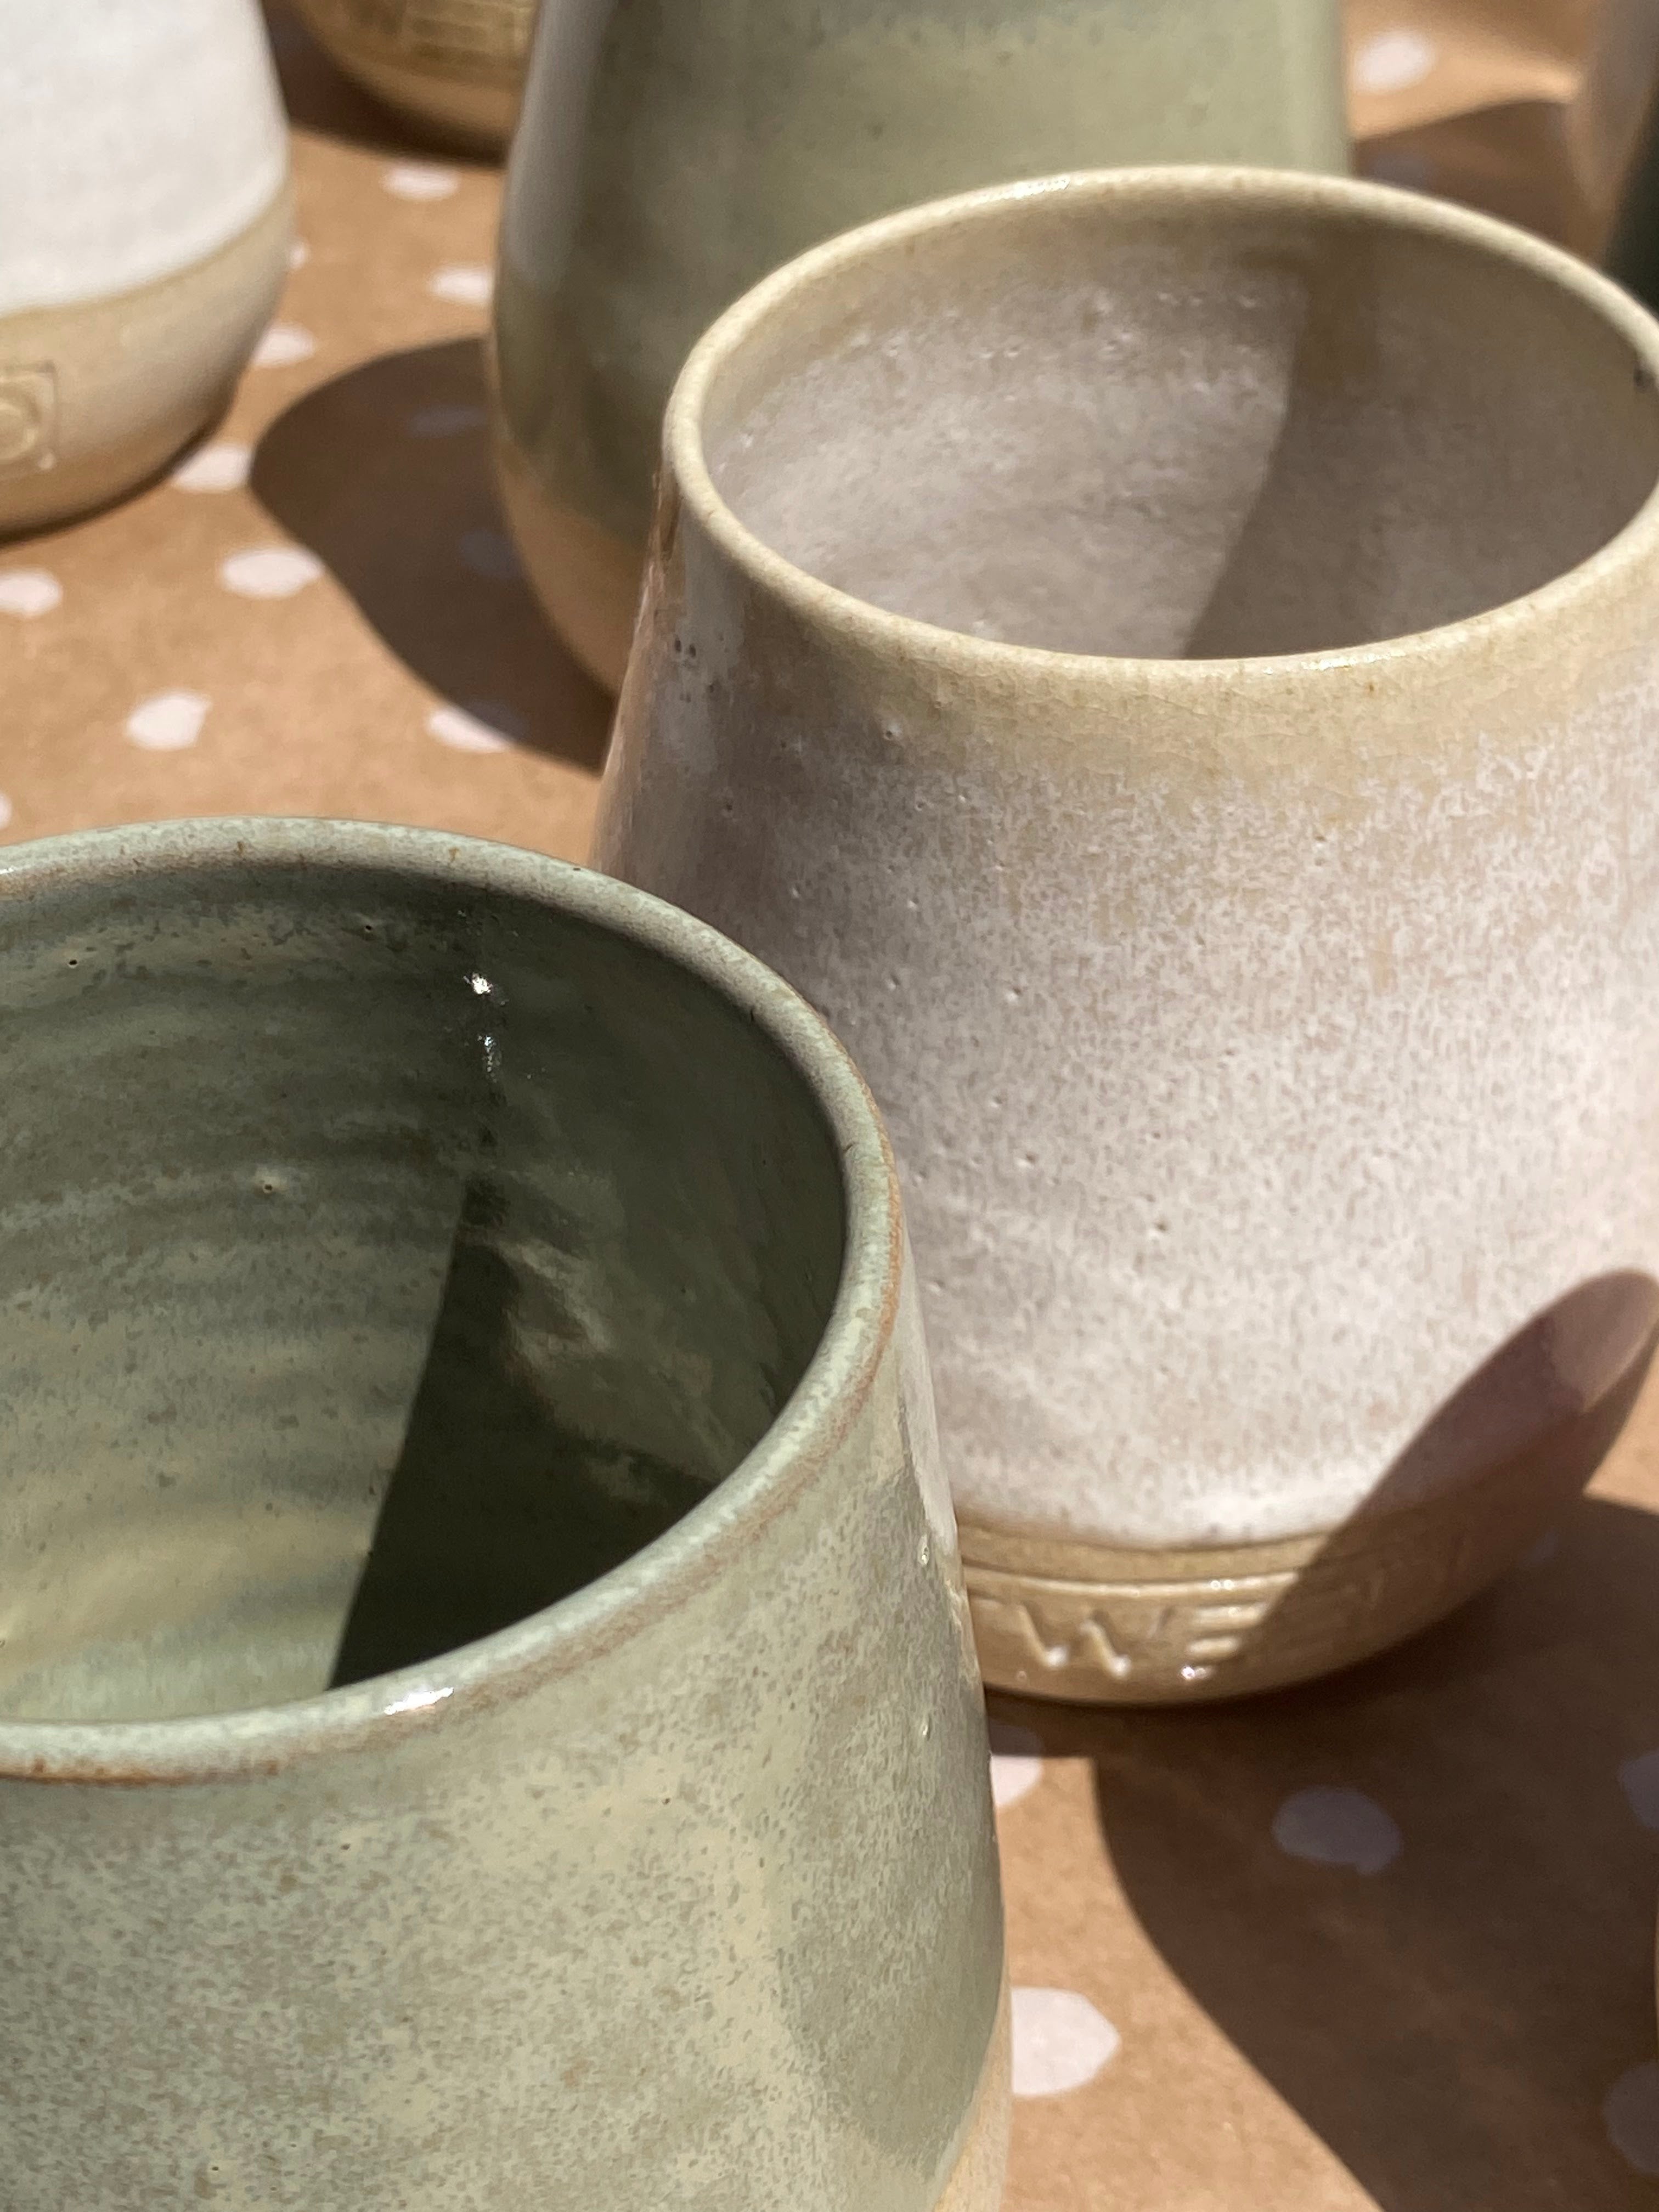 Estudio Obata Limited Edition Handthrown Tweed Ceramic Mugs – Tweed Coffee